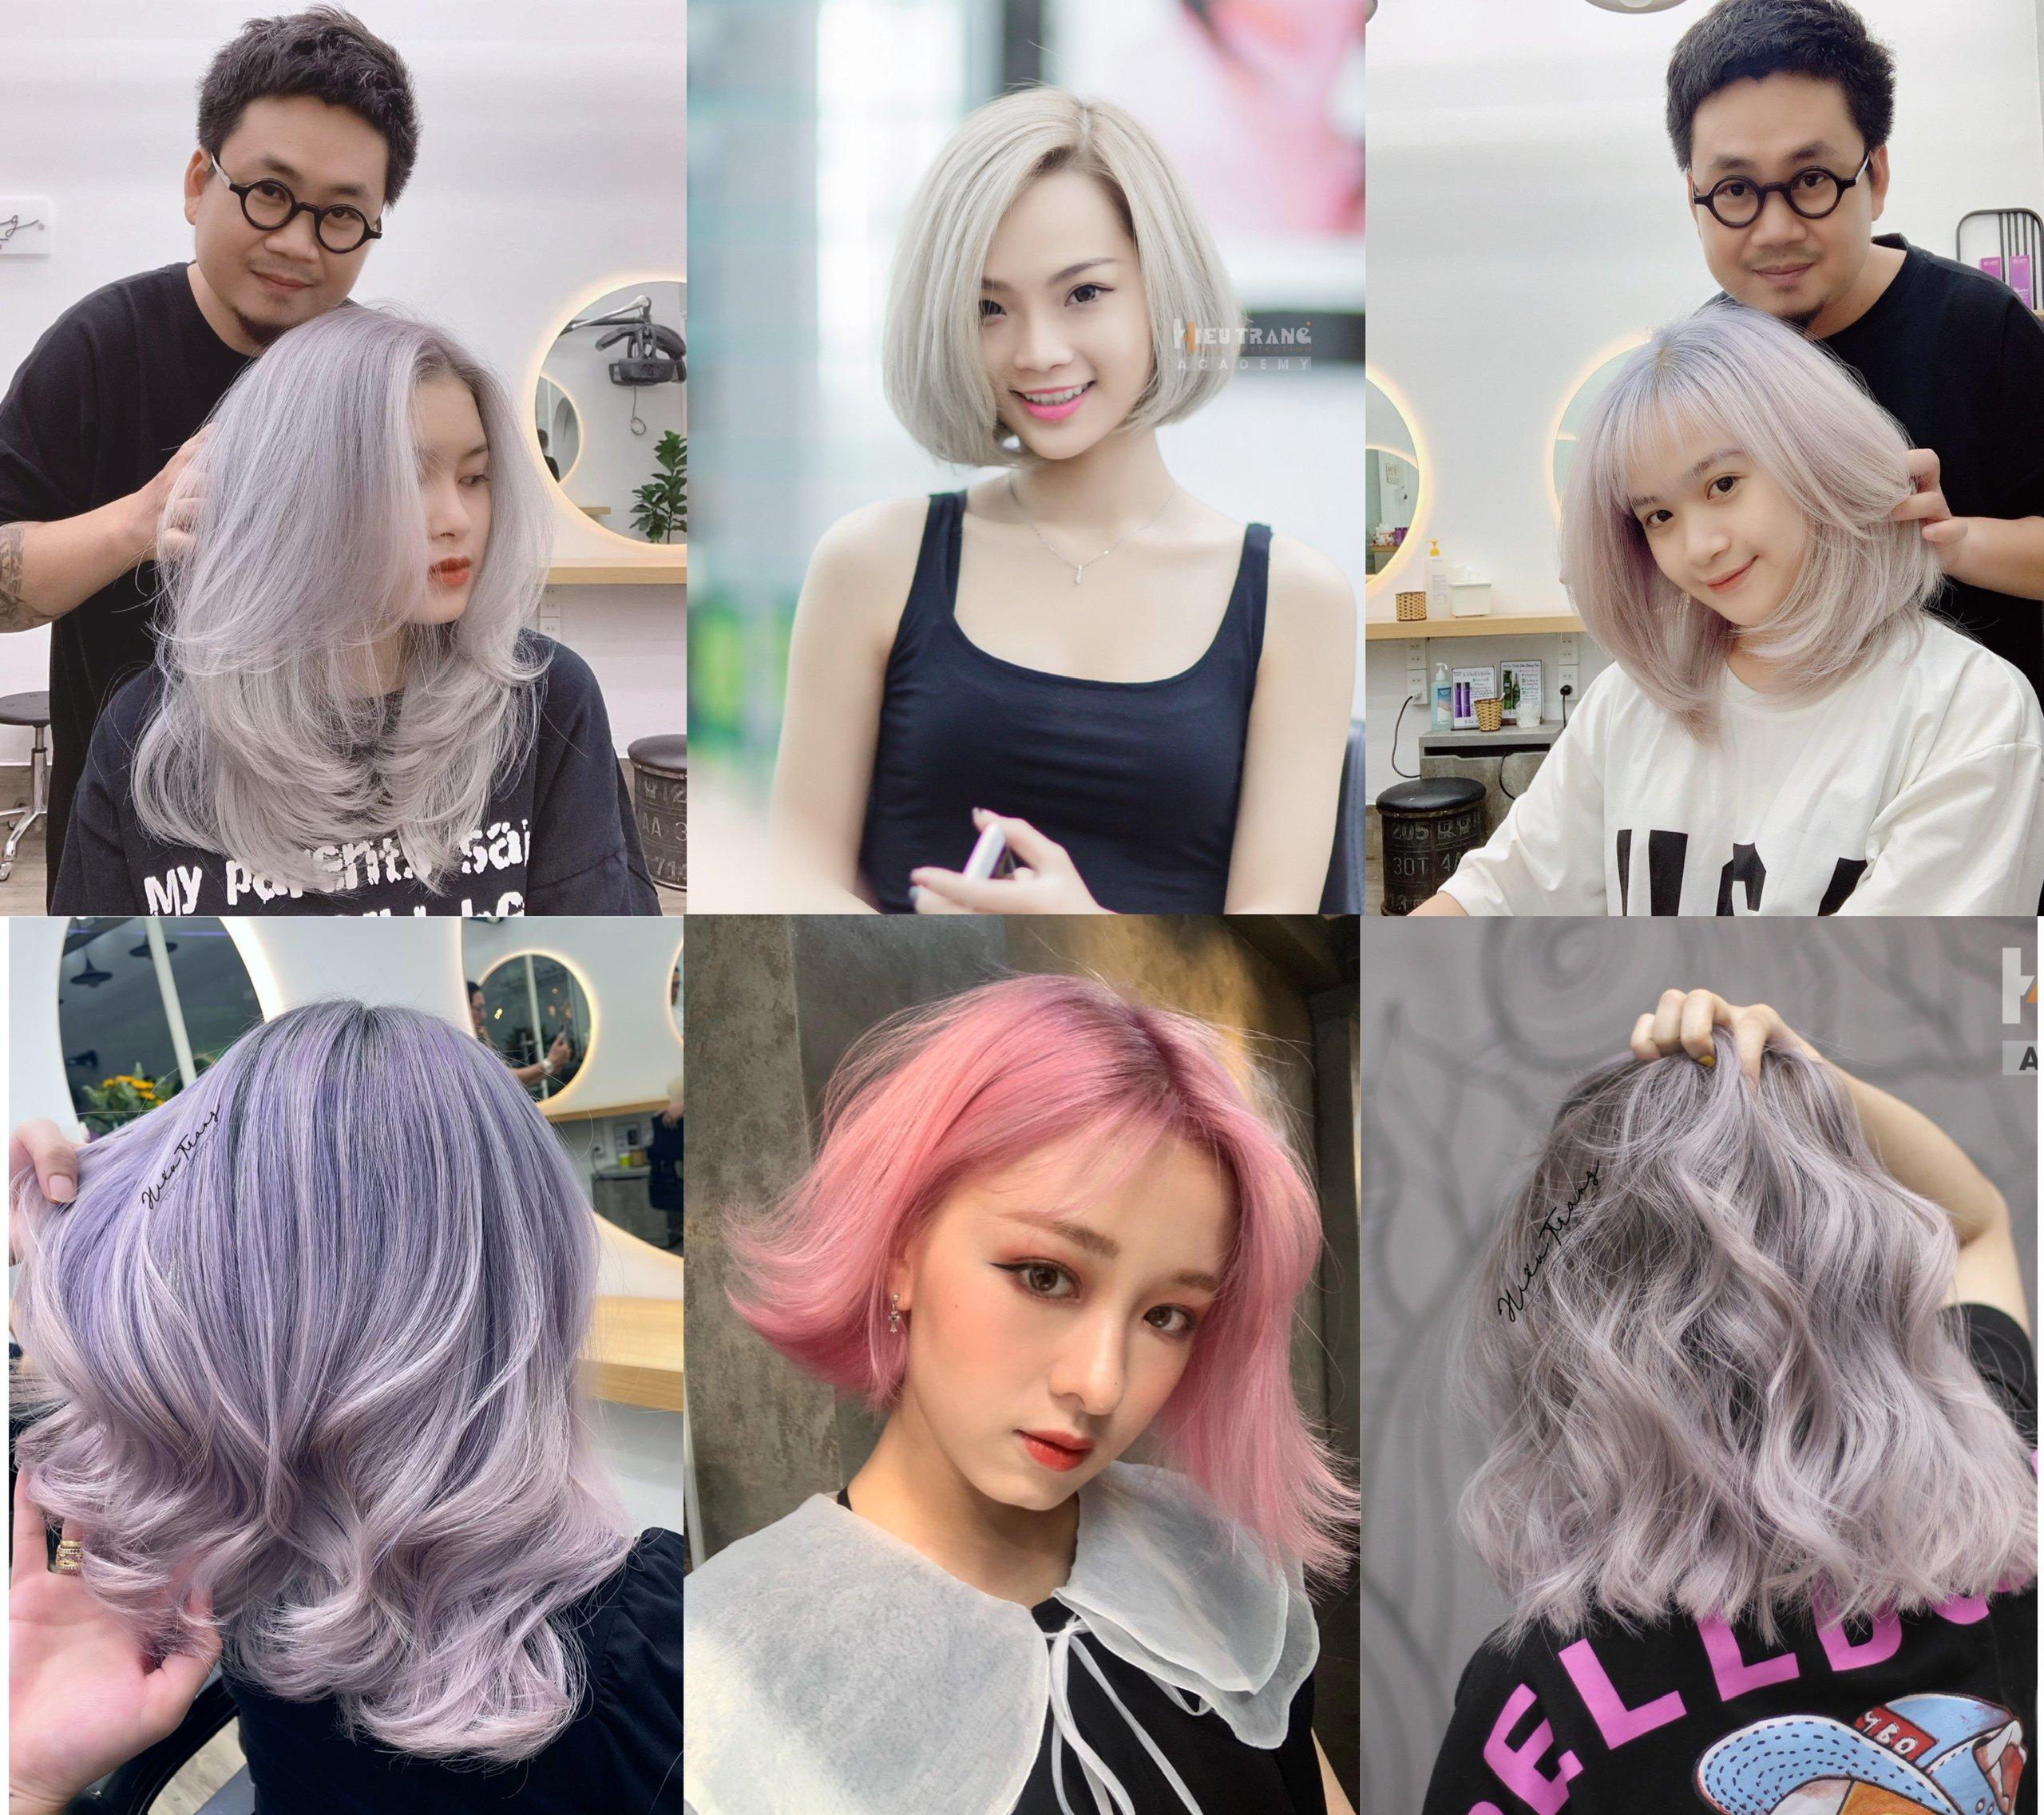 Salon làm tóc Sài Gòn sẽ giúp bạn tìm ra kiểu tóc mới và đẹp. Hãy xem qua hình ảnh để tìm hiểu về những gợi ý mới nhất và cập nhật nhất về kiểu tóc sành điệu nhất.